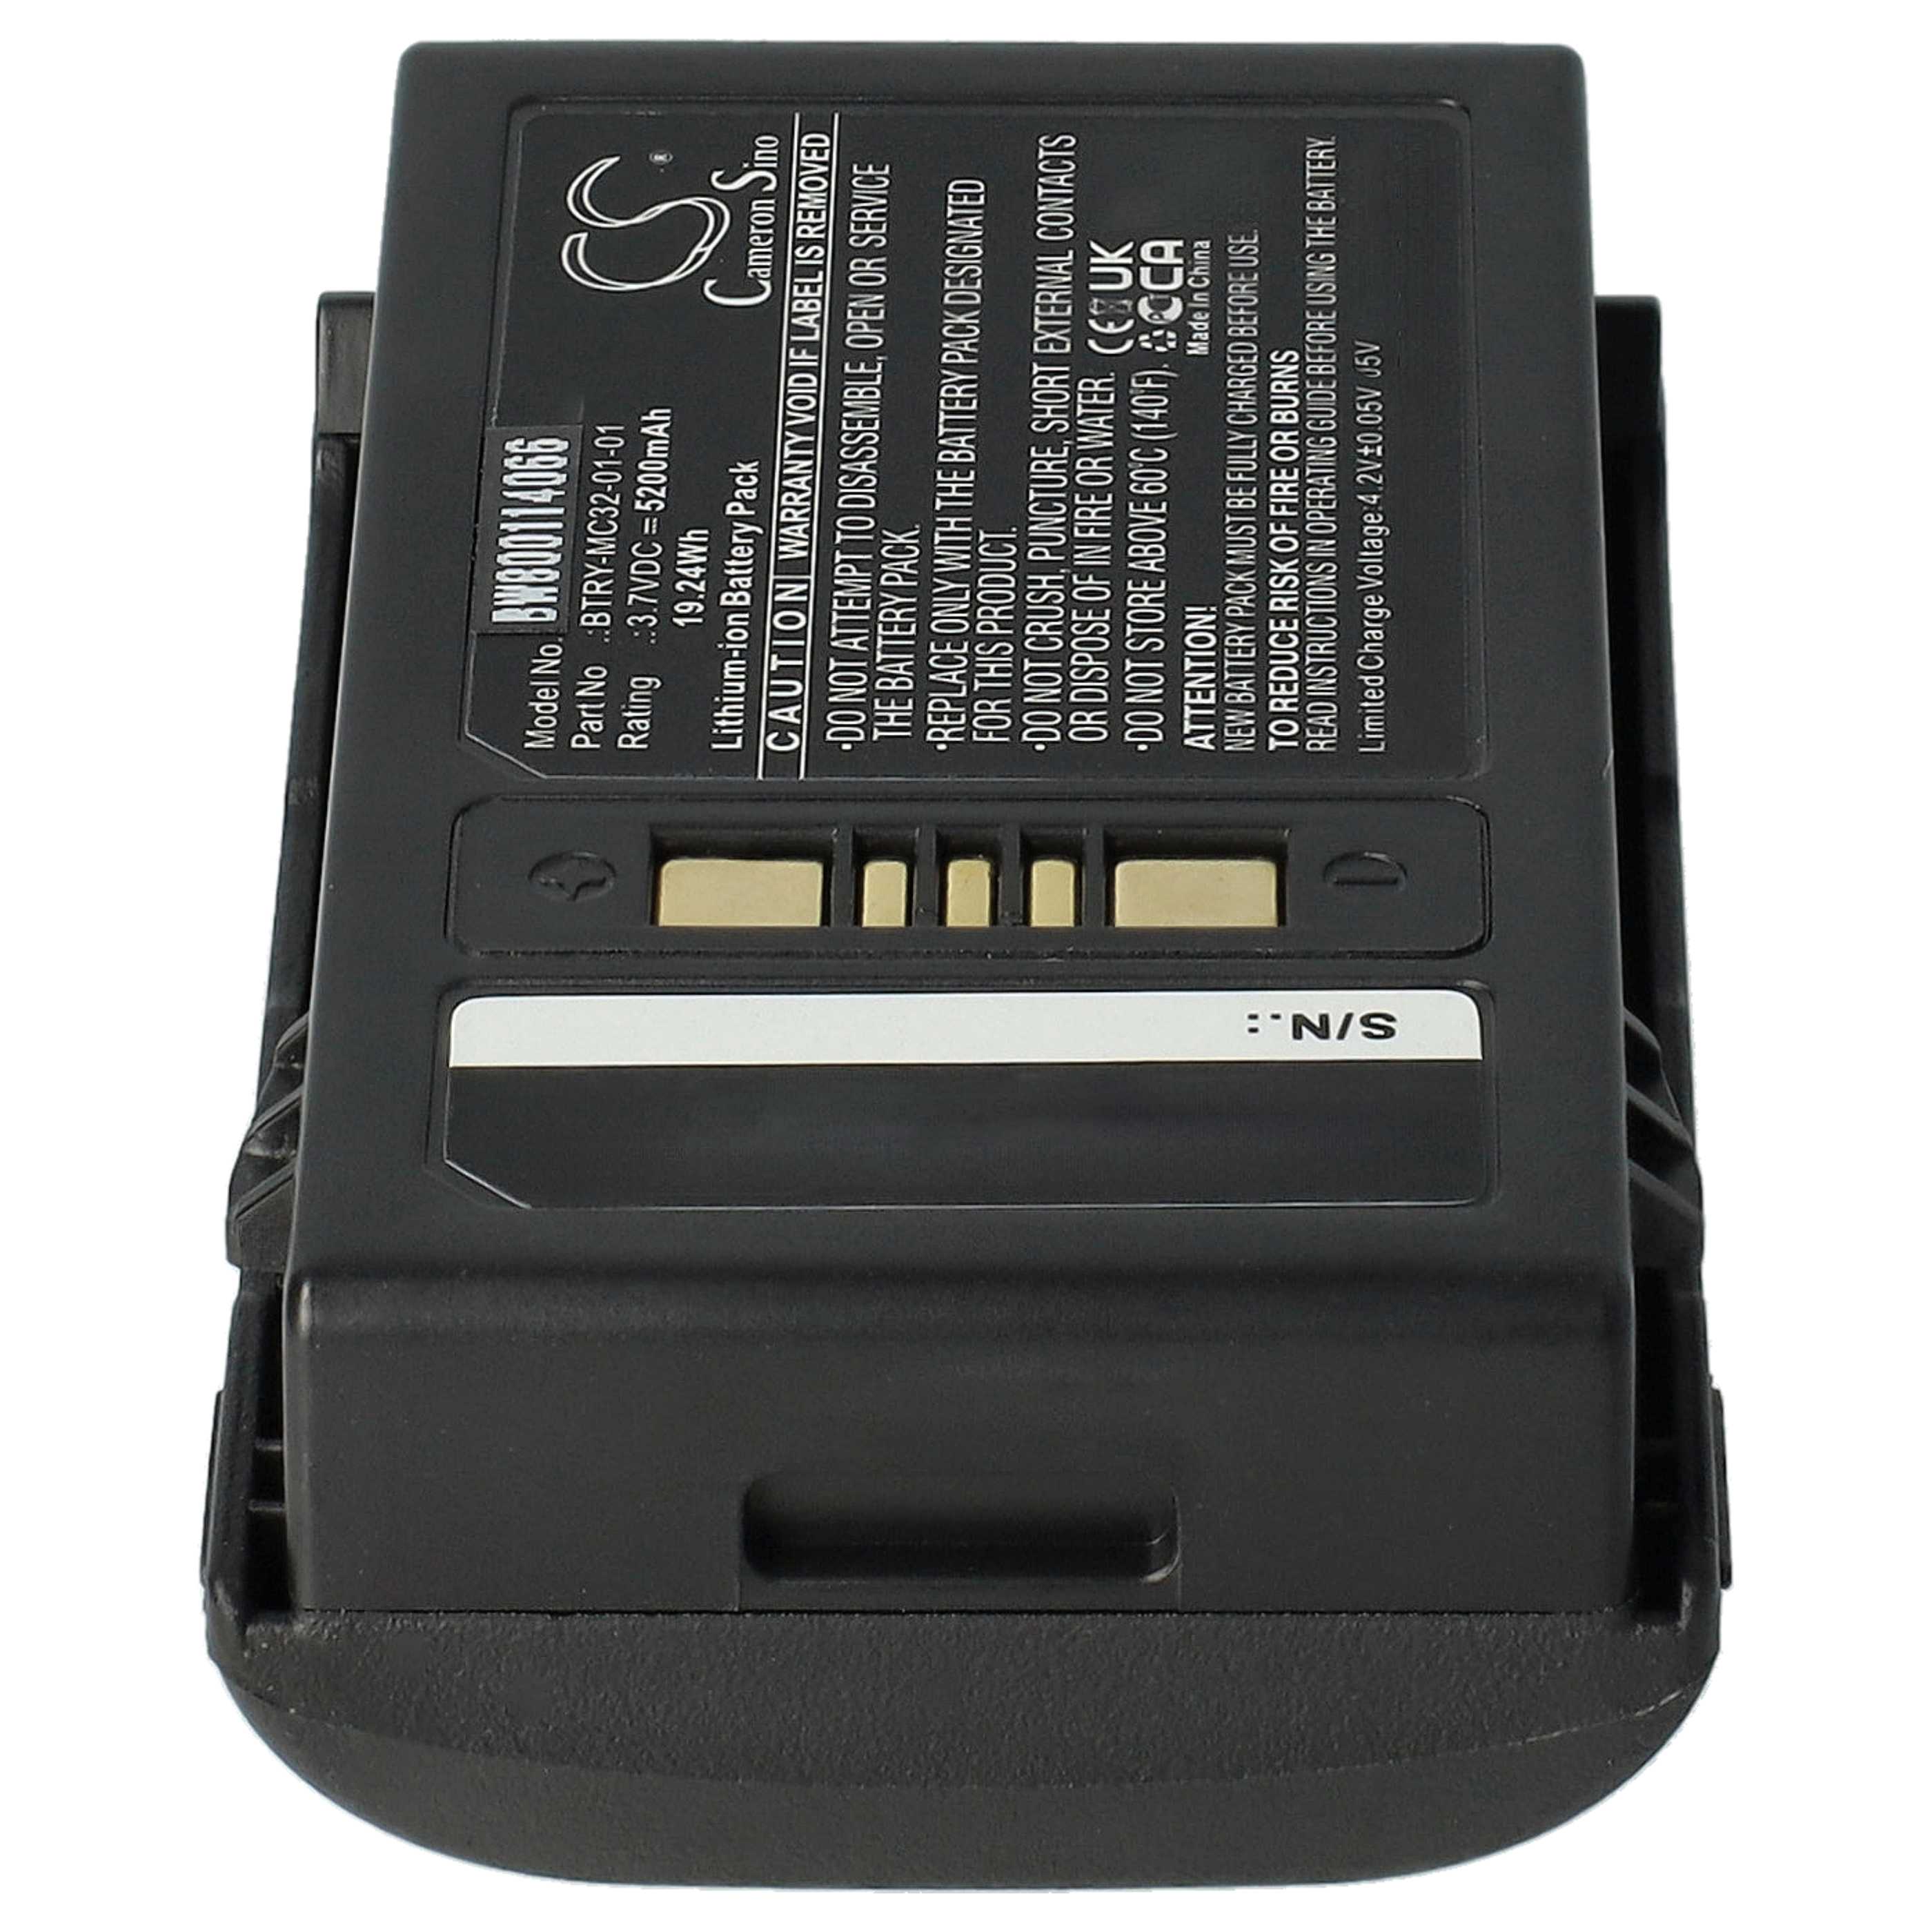 Barcodescanner-Akku als Ersatz für Motorola BTRY-MC32-01-01 - 5200mAh 3,7V Li-Ion